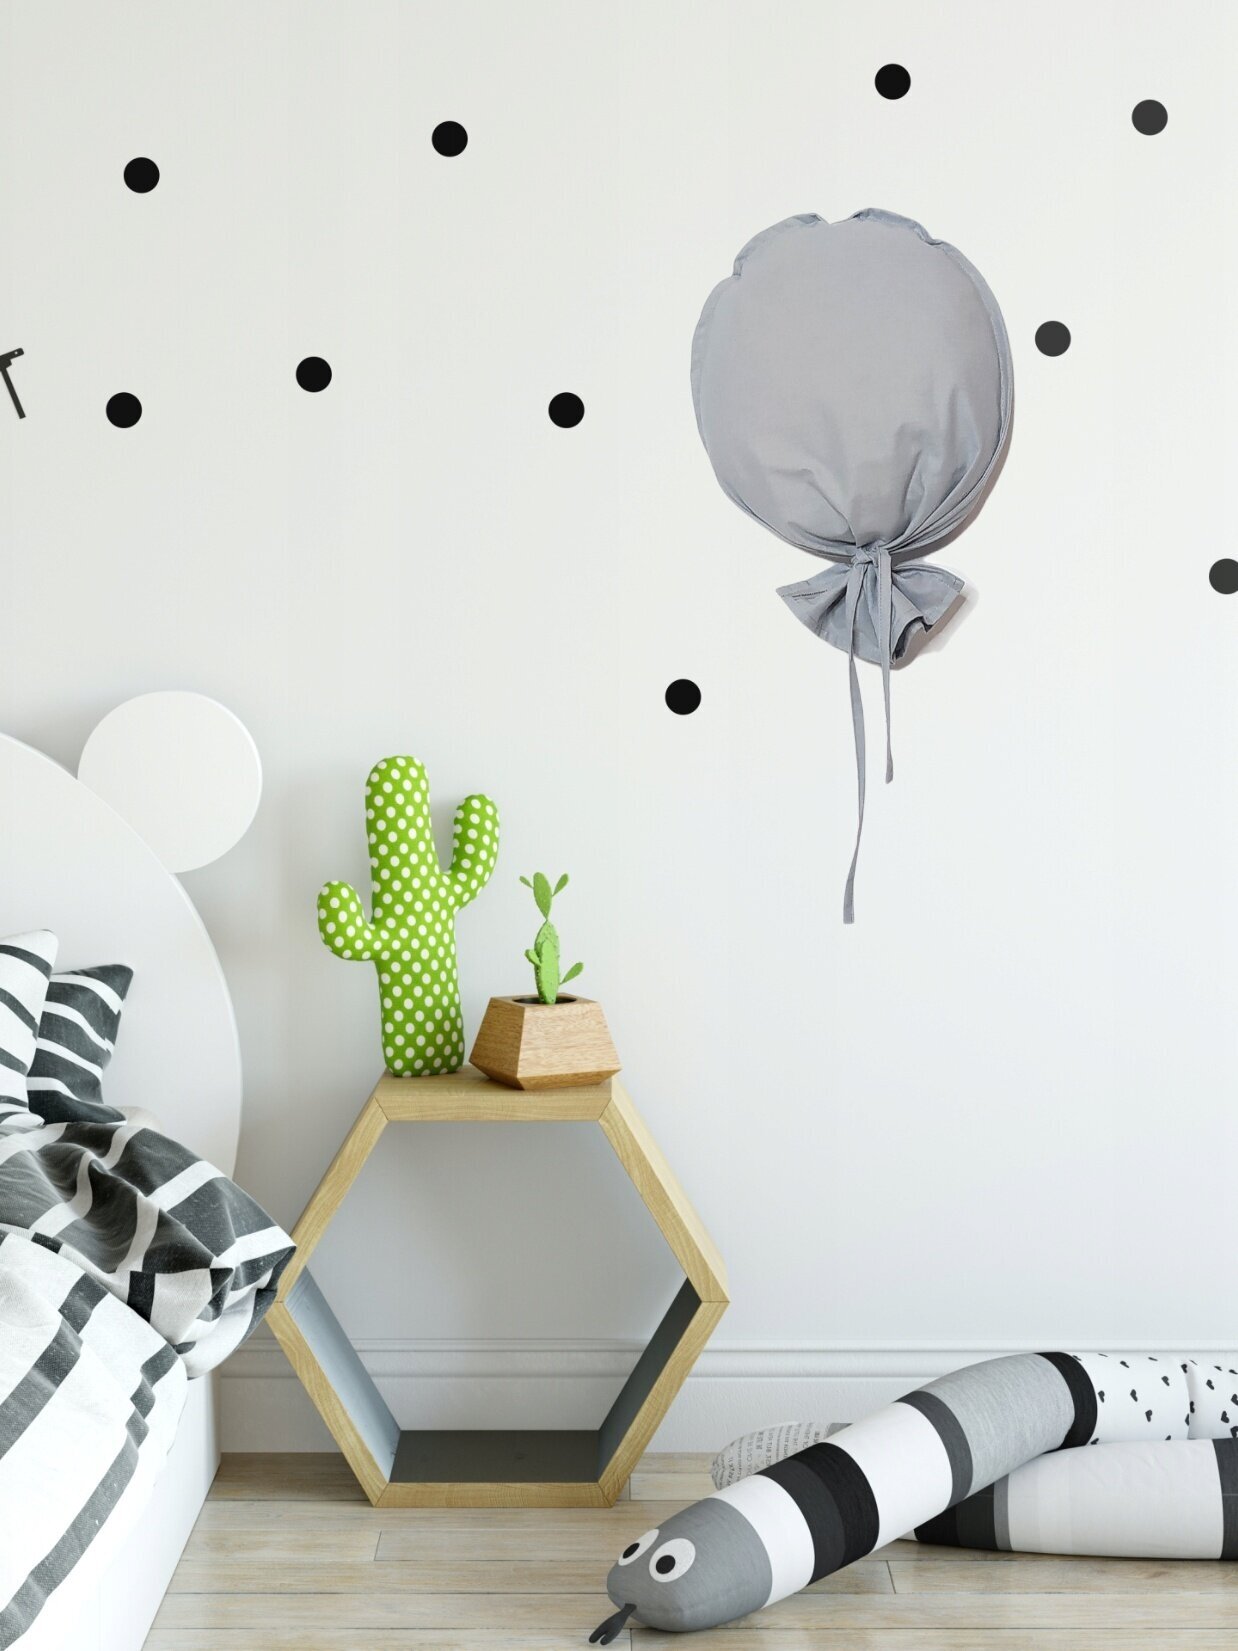 Настенный декор для детской комнаты "Воздушный шар" Серый/ Детское украшение на стену/Скандинавский стиль